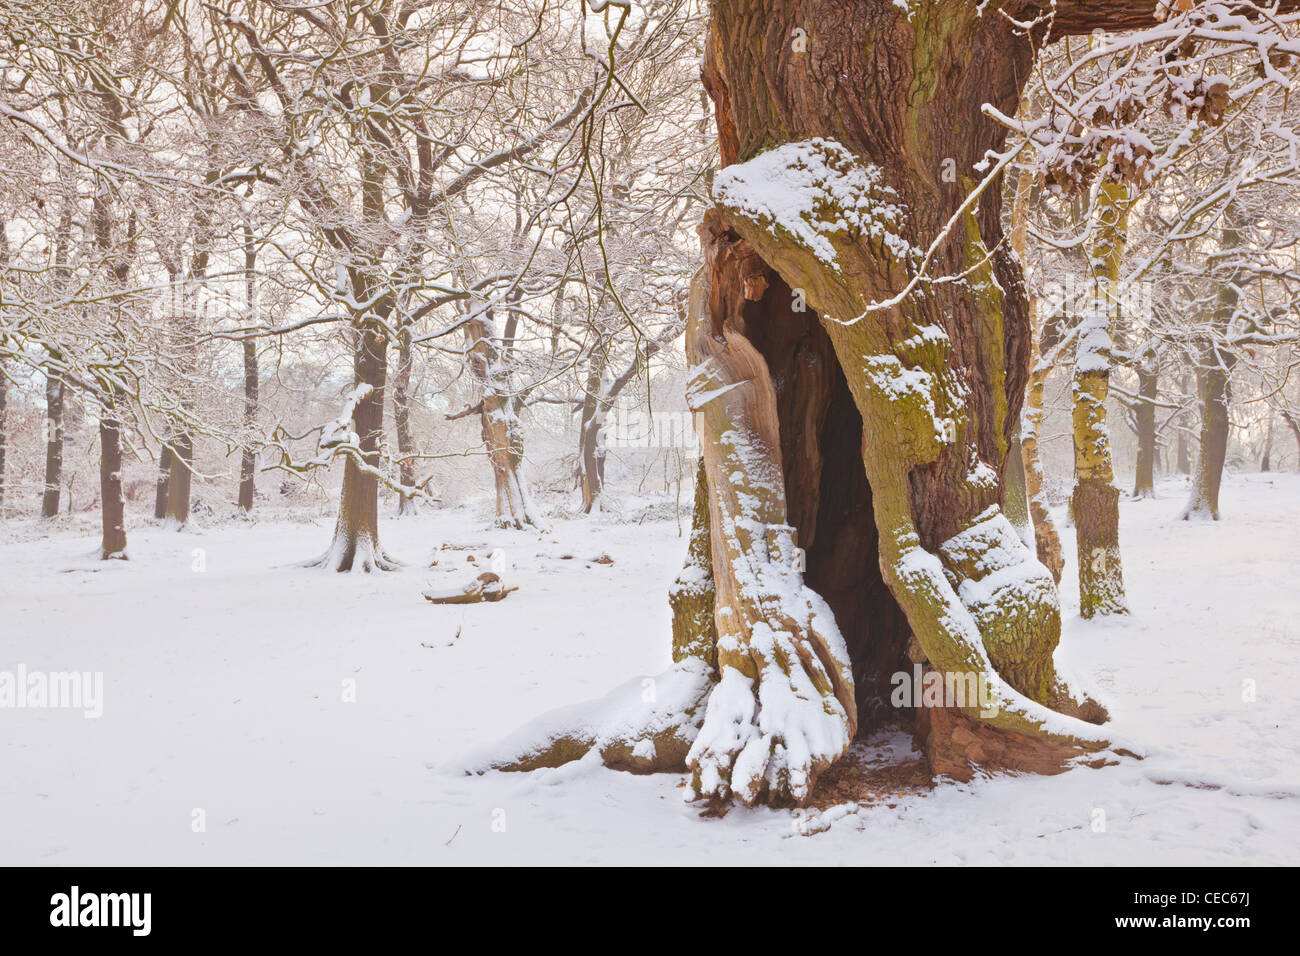 Arbre de chêne dans la neige fraîche sherwood forest country park edwinstowe dorset england uk gb eu Europe Banque D'Images